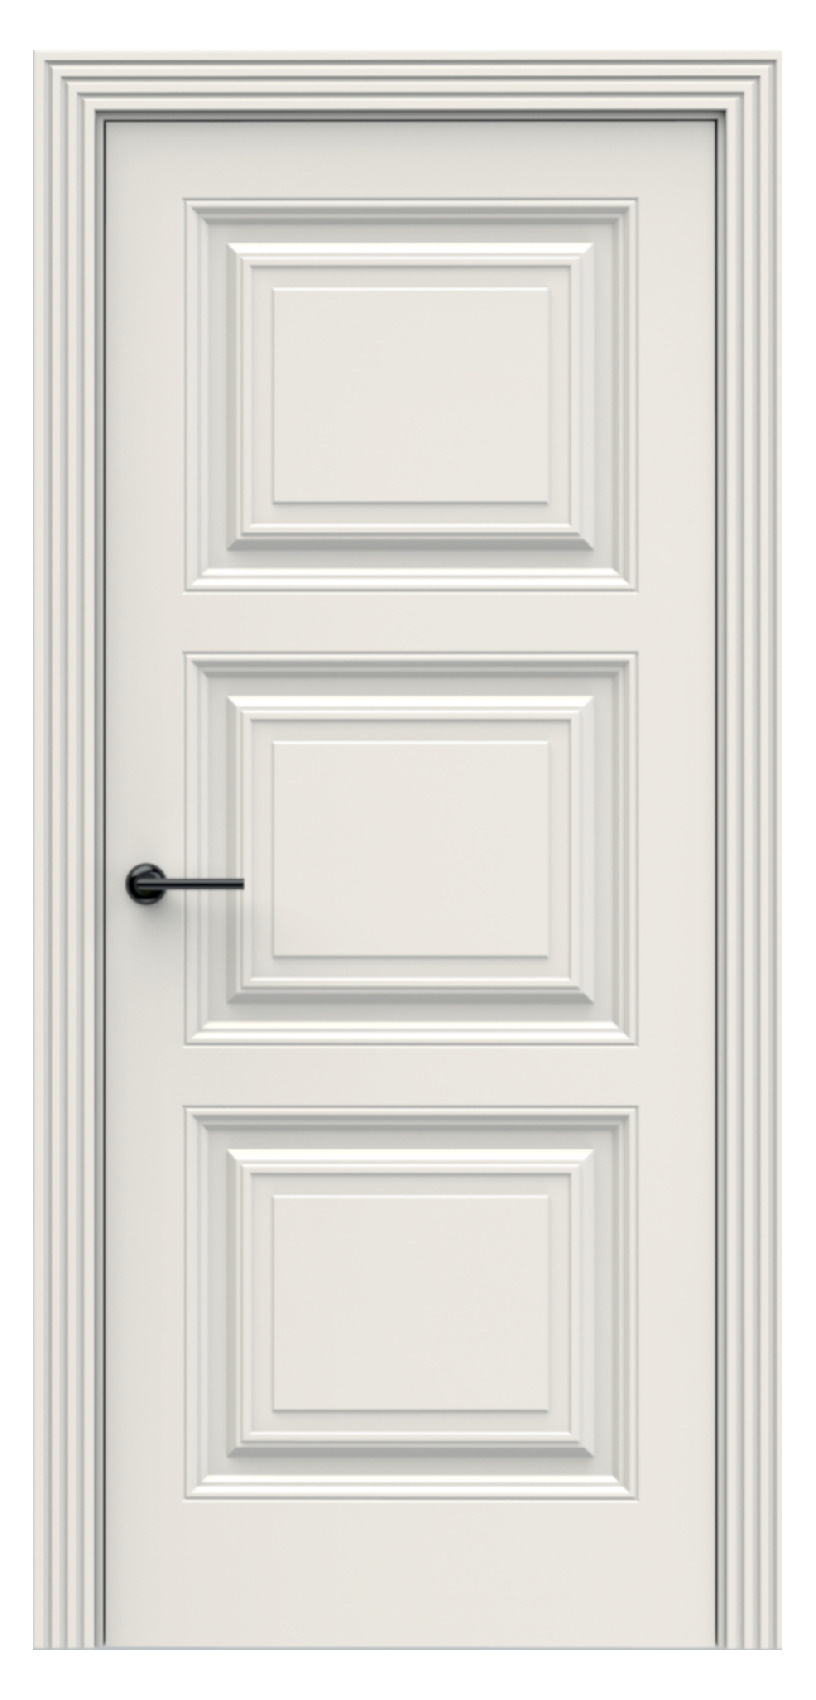 Questdoors Межкомнатная дверь QBR11, арт. 17924 - фото №1